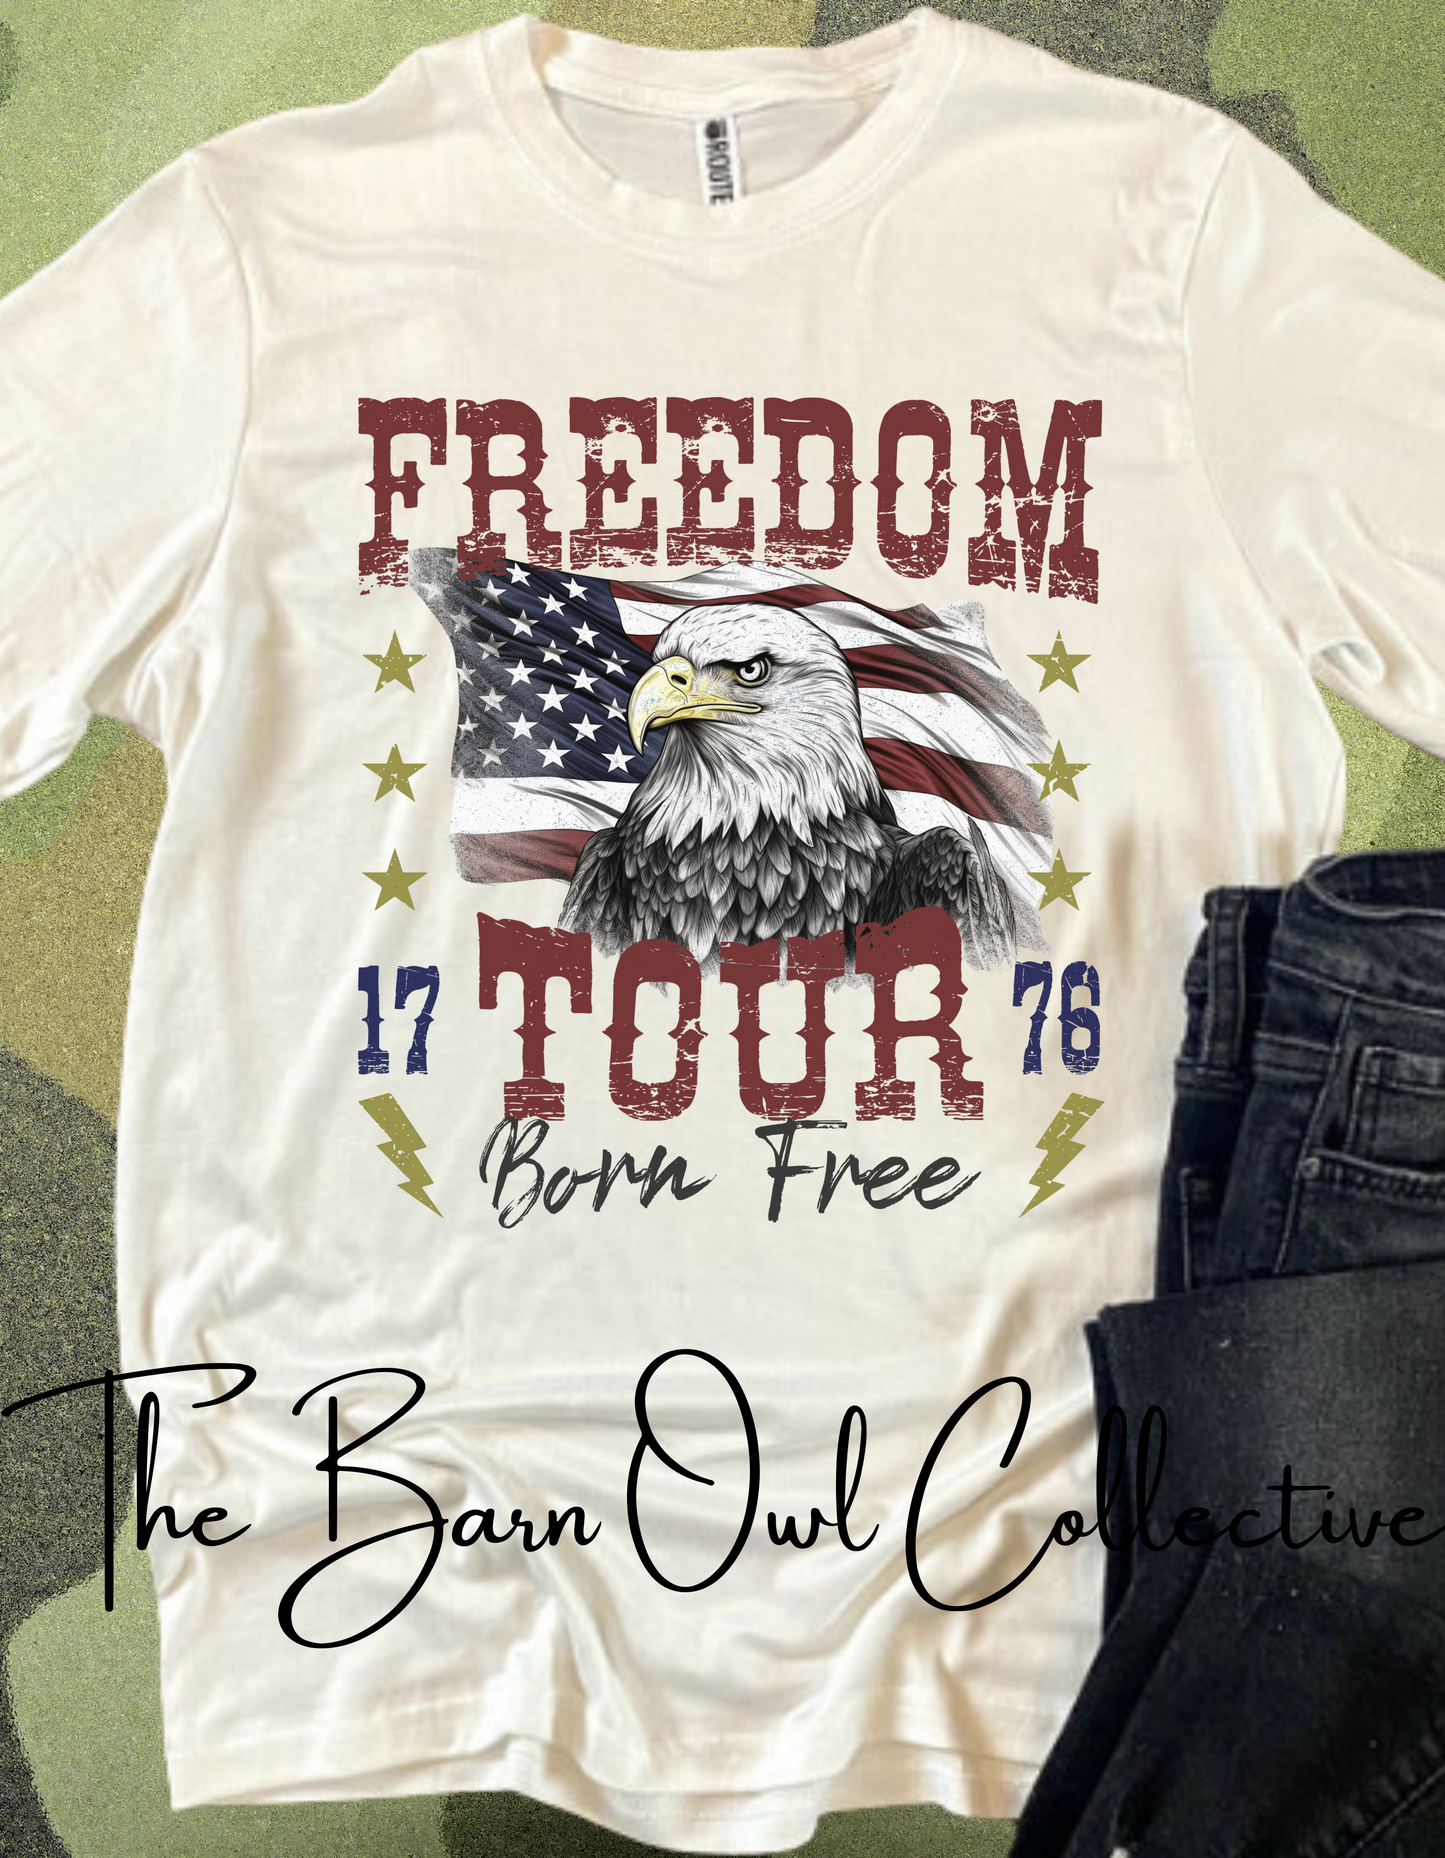 Eagle Freedom Tour Unisex Crewneck T-Shirt